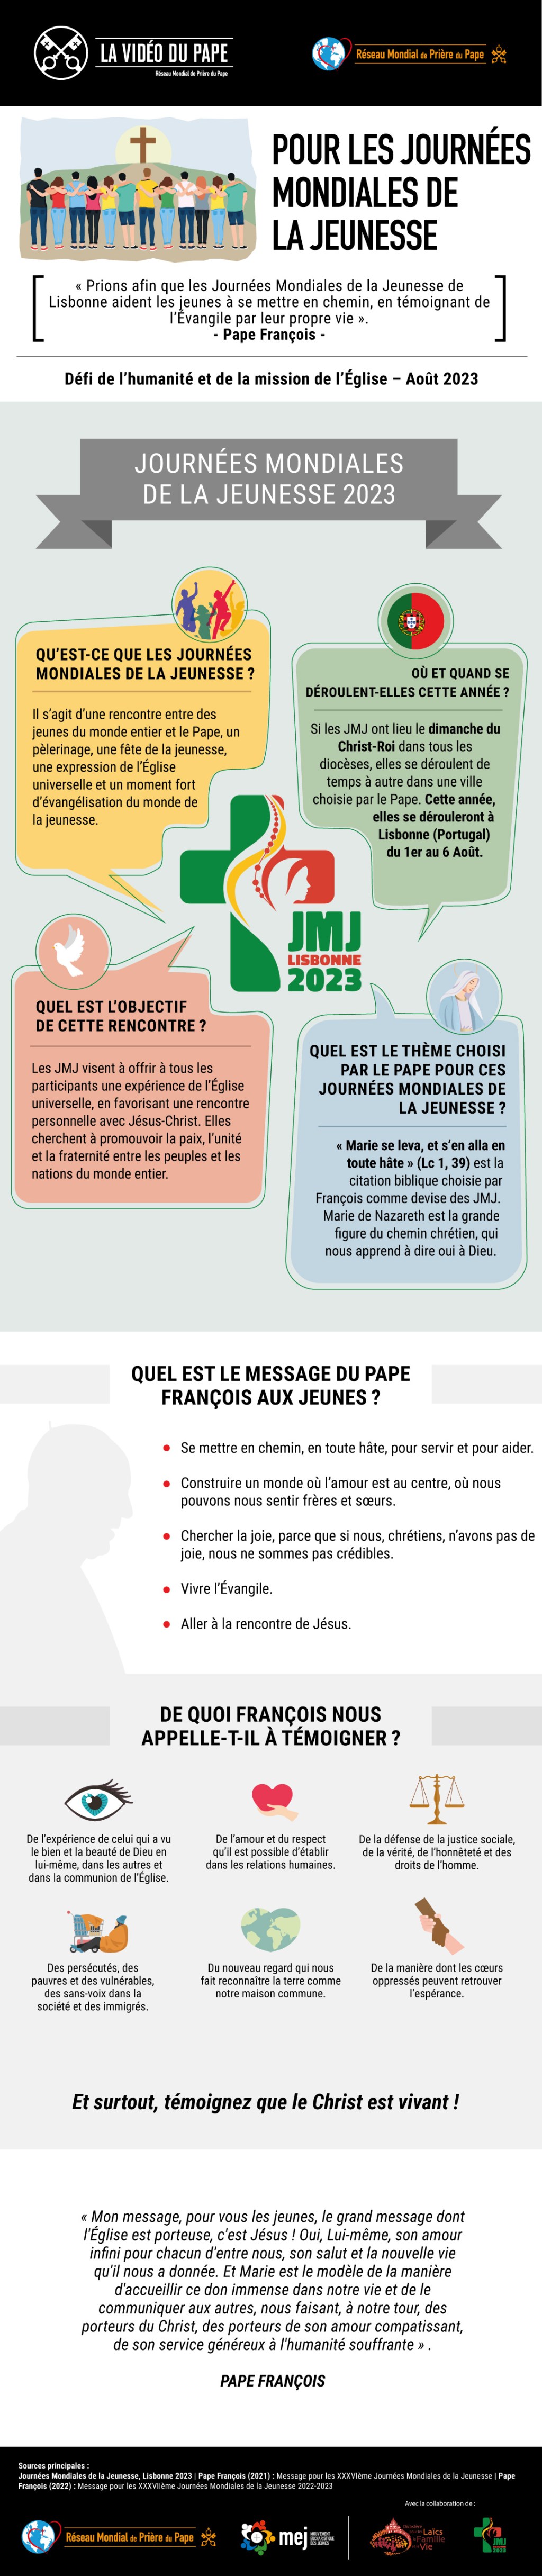 Infographic-TPV-8-2023-FR-Pour-les-Journees-Mondiales-de-la-Jeunesse